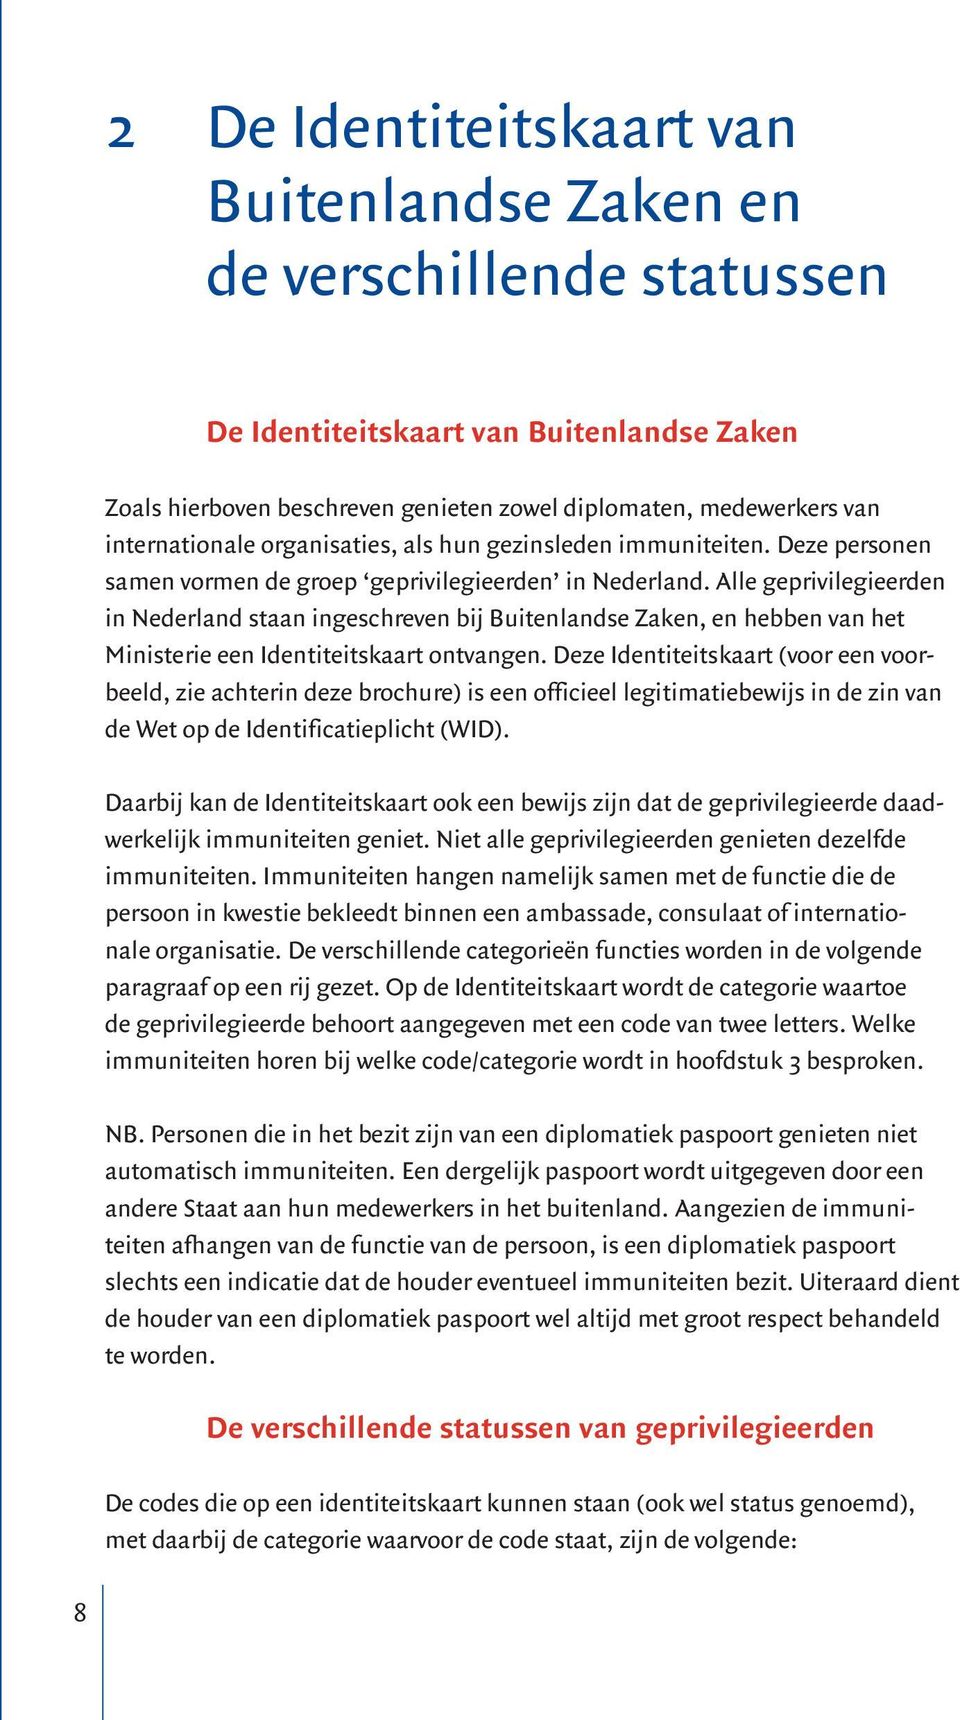 Alle geprivilegieerden in Nederland staan ingeschreven bij Buitenlandse Zaken, en hebben van het Ministerie een Identiteitskaart ontvangen.